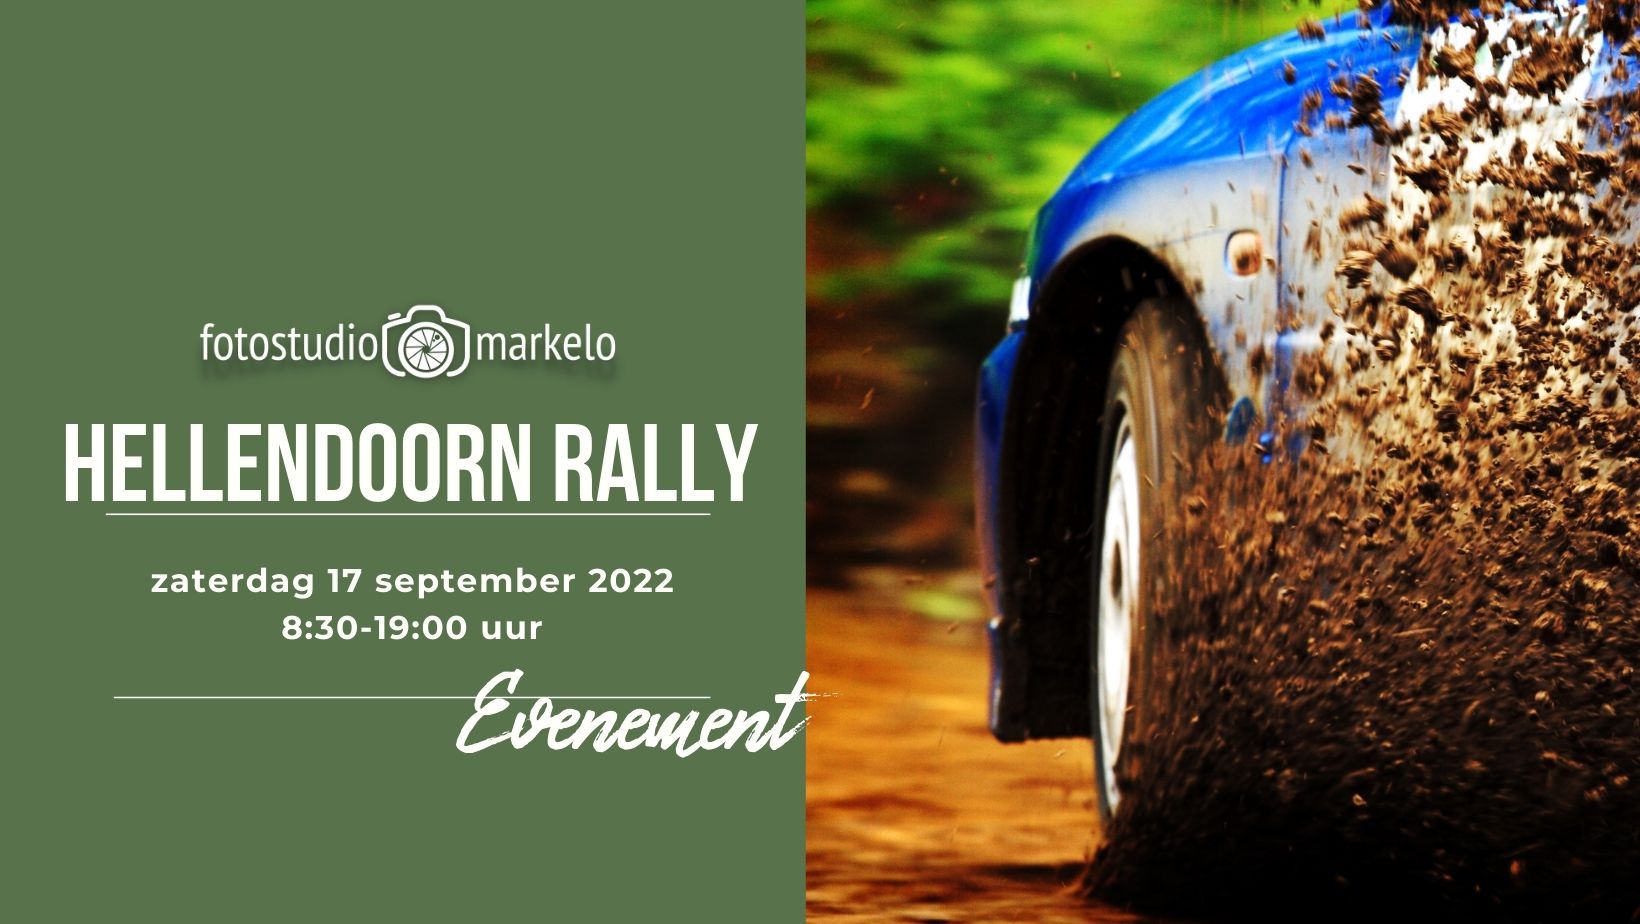 hellendoorn rally 17 september 2022 fotostudio markelo